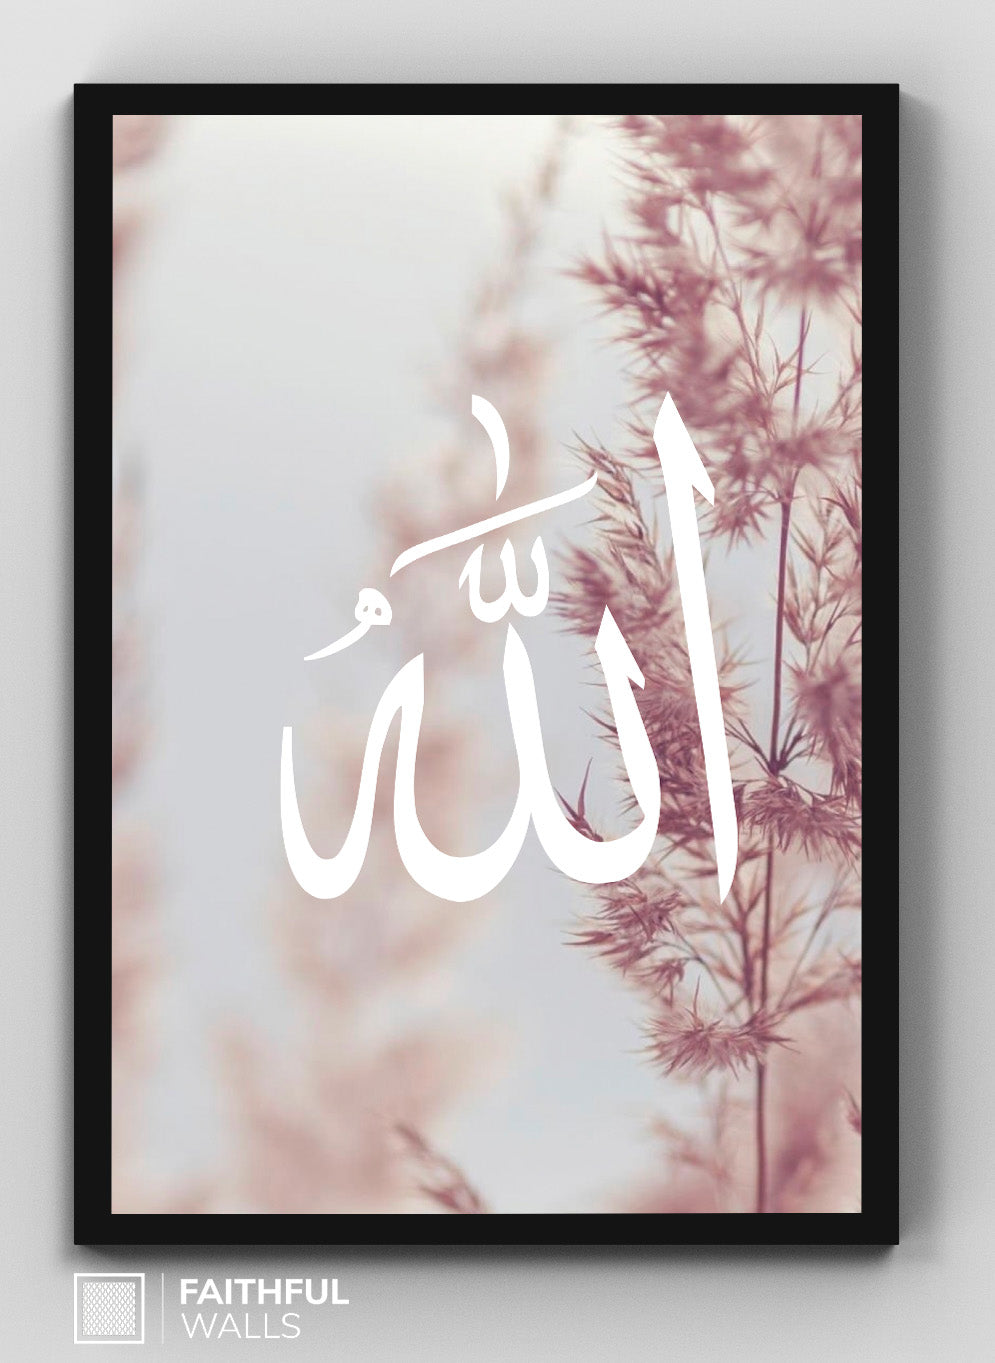 Allah - Muhammad